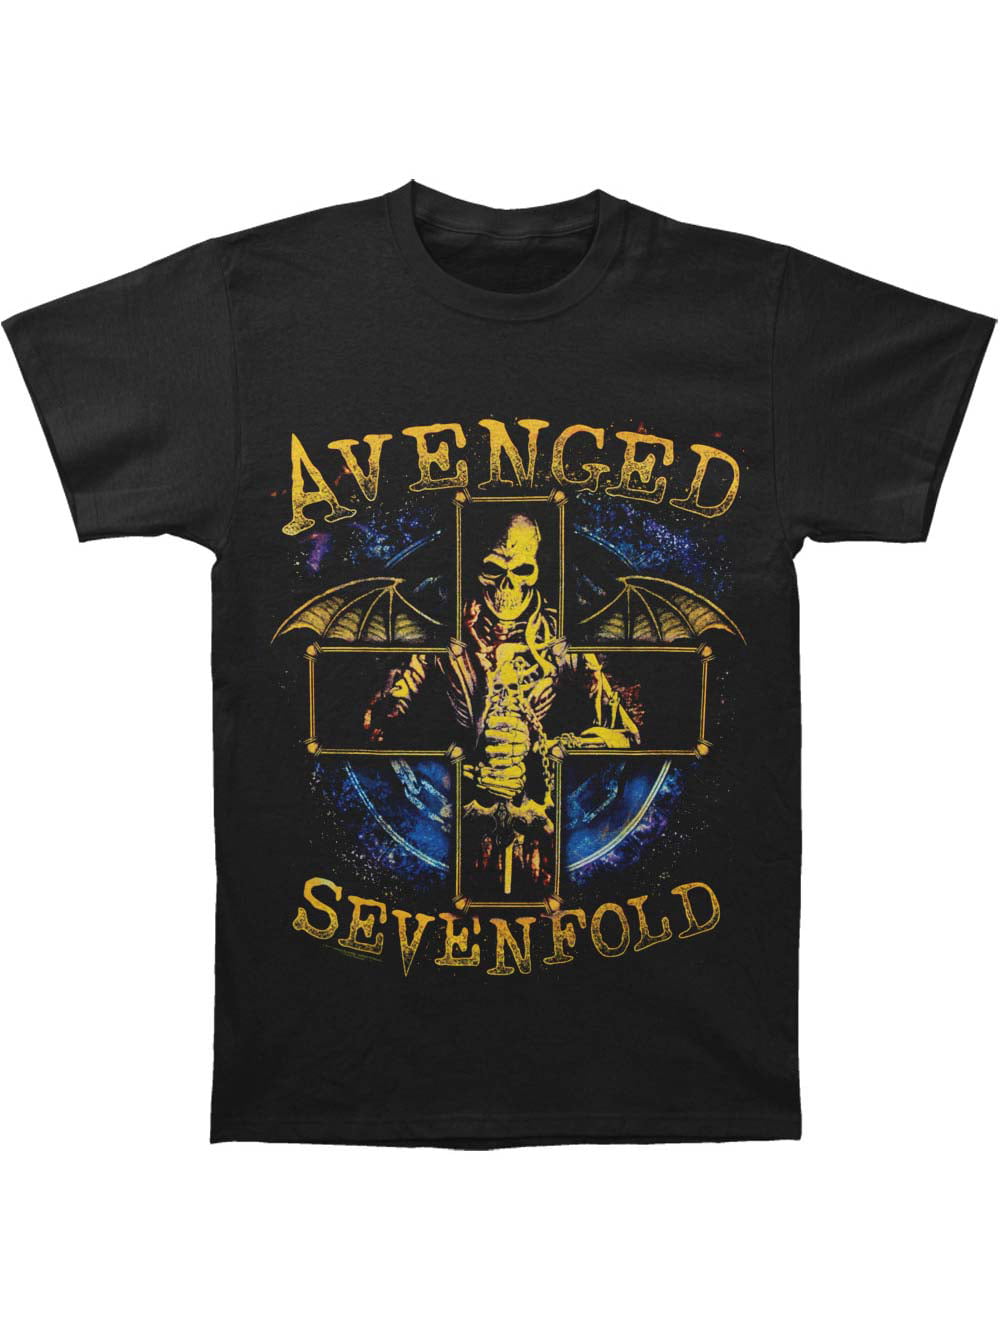 Stellar 2014 Tour T-Shirt Avenged Sevenfold